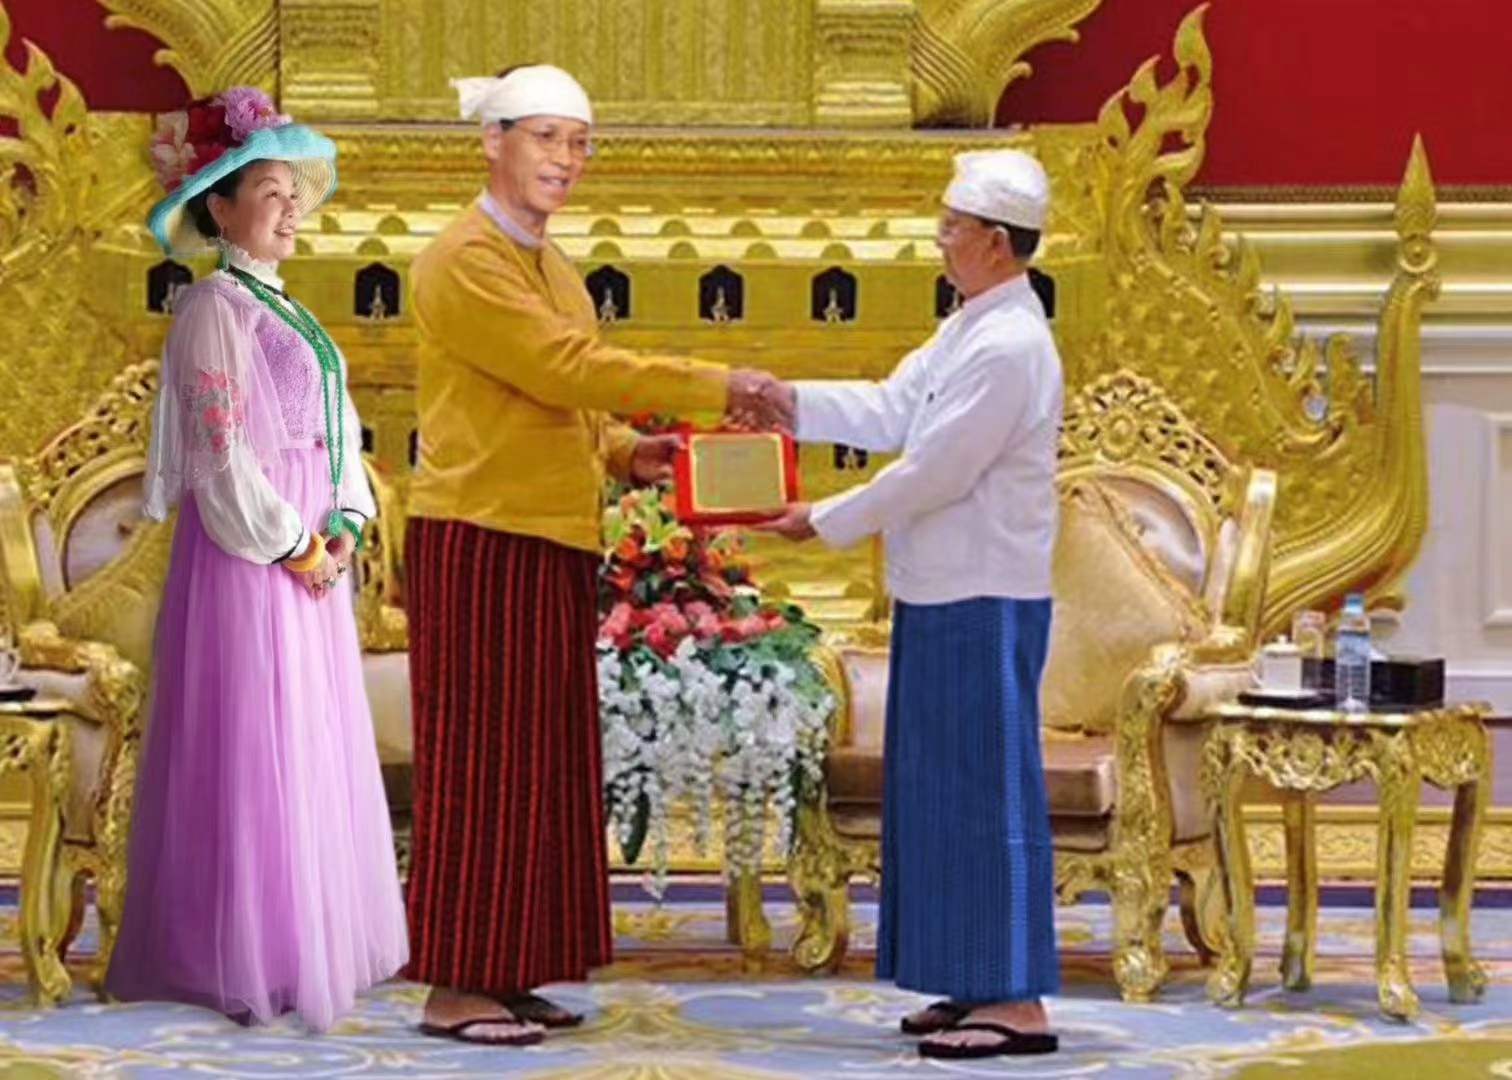 缅甸国家联邦共和国赛茂康总统在缅甸总统府新春贺词